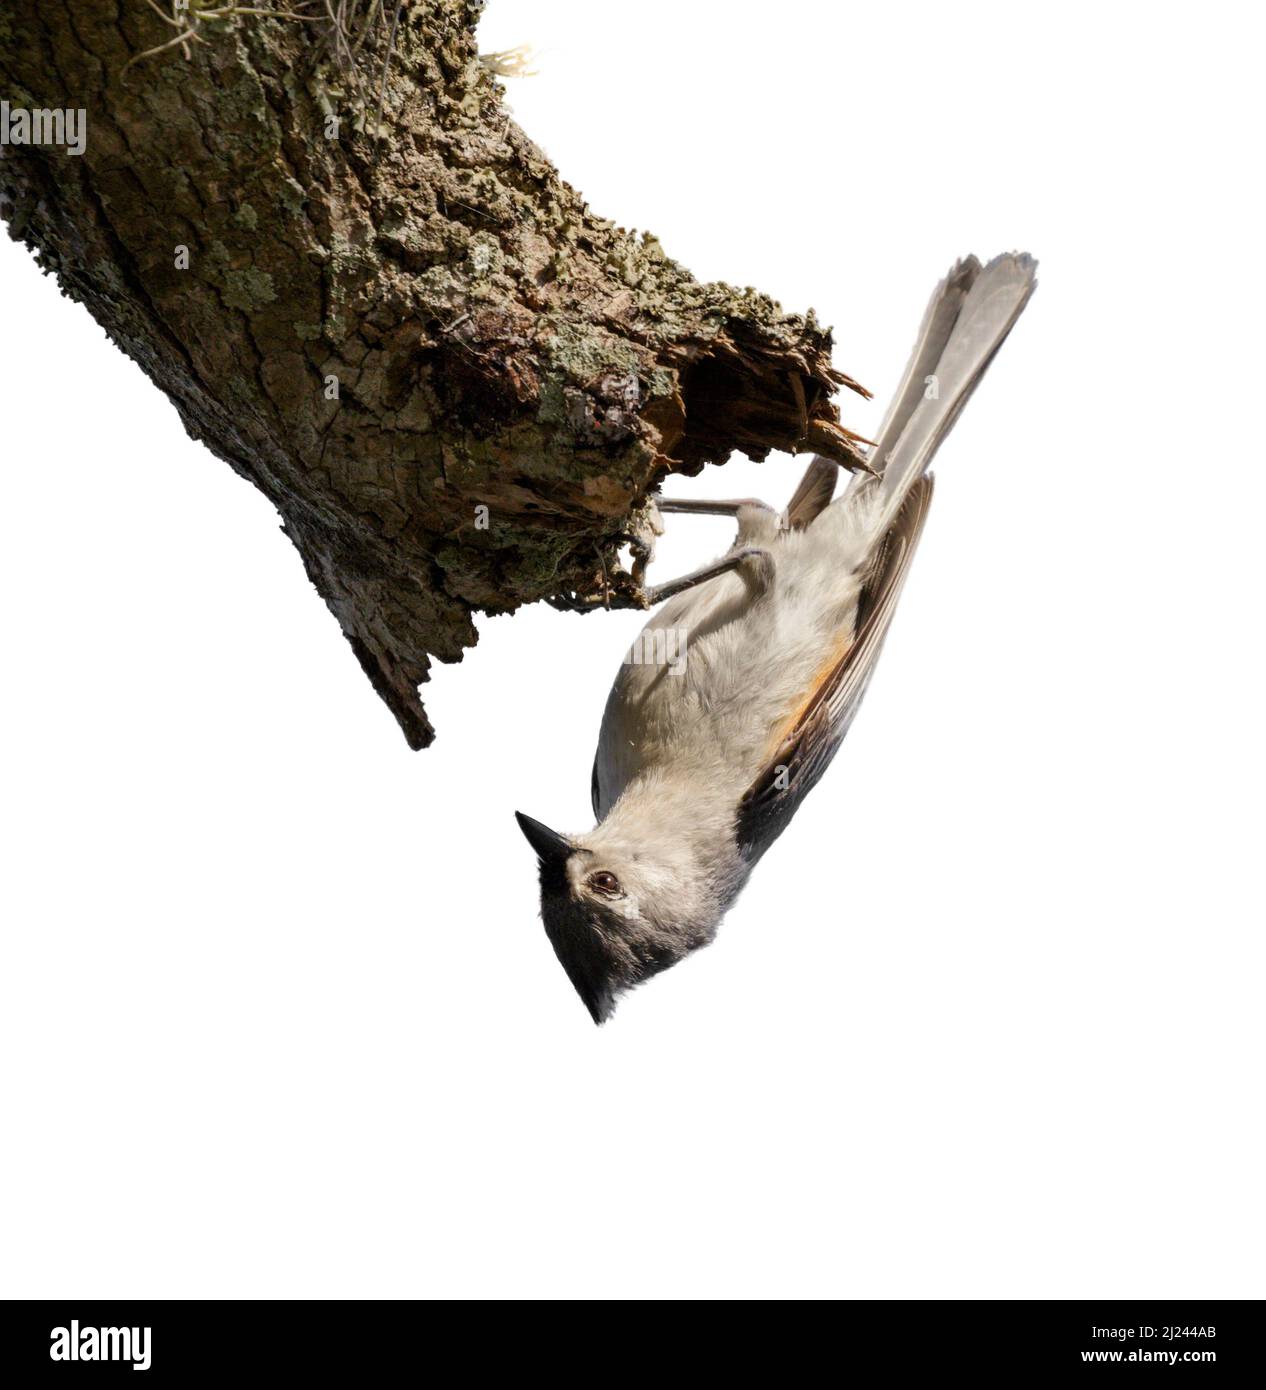 Titmouse touffeté (Baeolophus bicolor) se nourrissant à l'envers, isolée sur fond blanc Banque D'Images